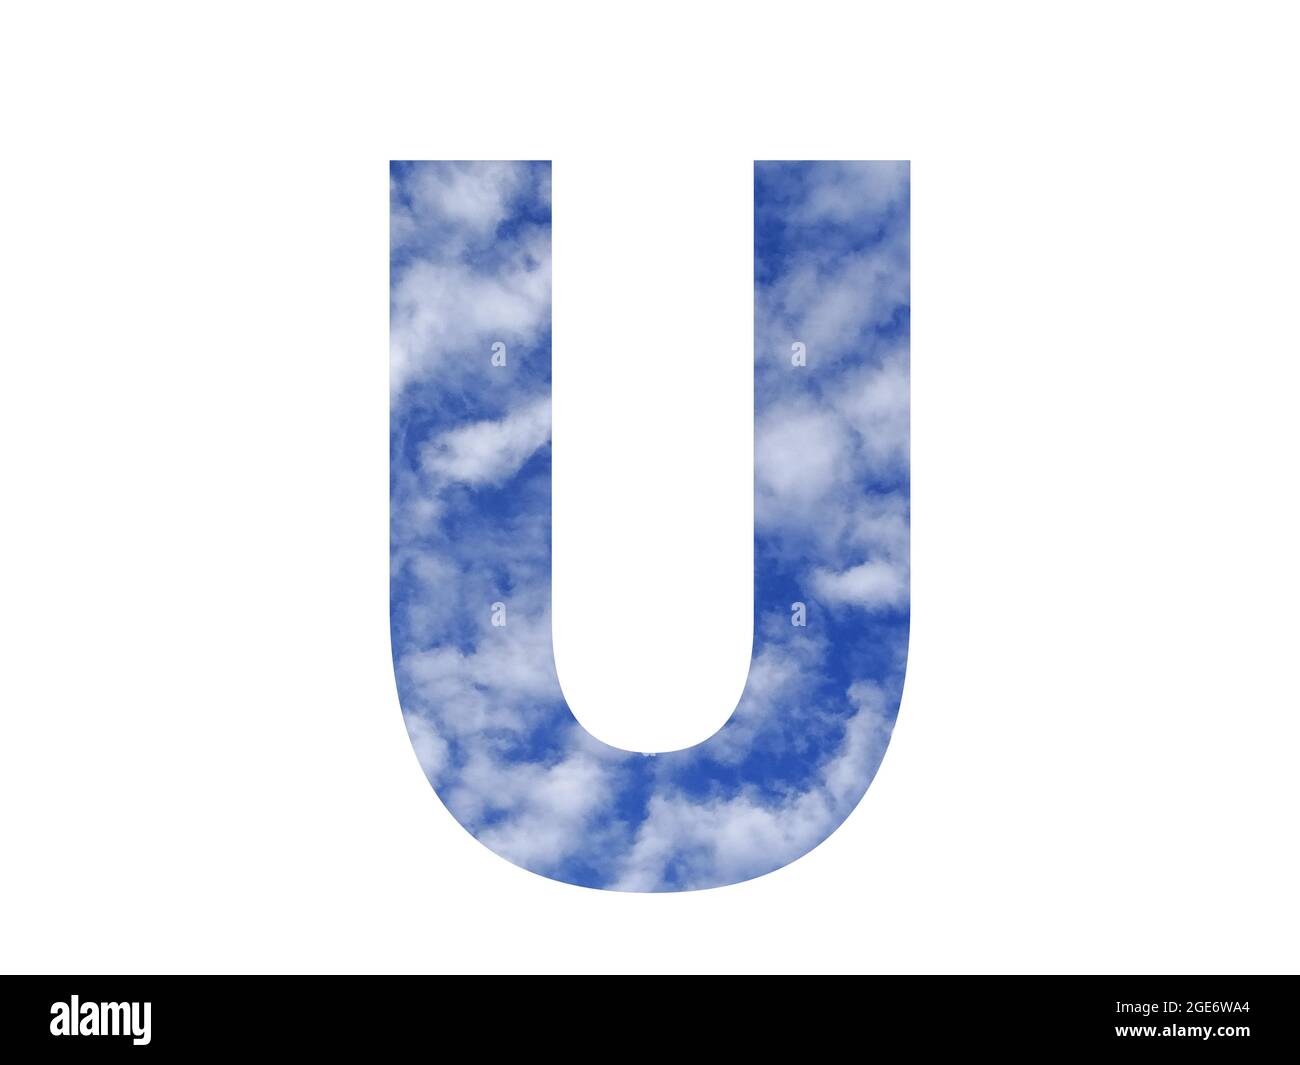 Lettera U dell'alfabeto fatta con cielo blu e nuvole bianche, isolata su sfondo bianco Foto Stock